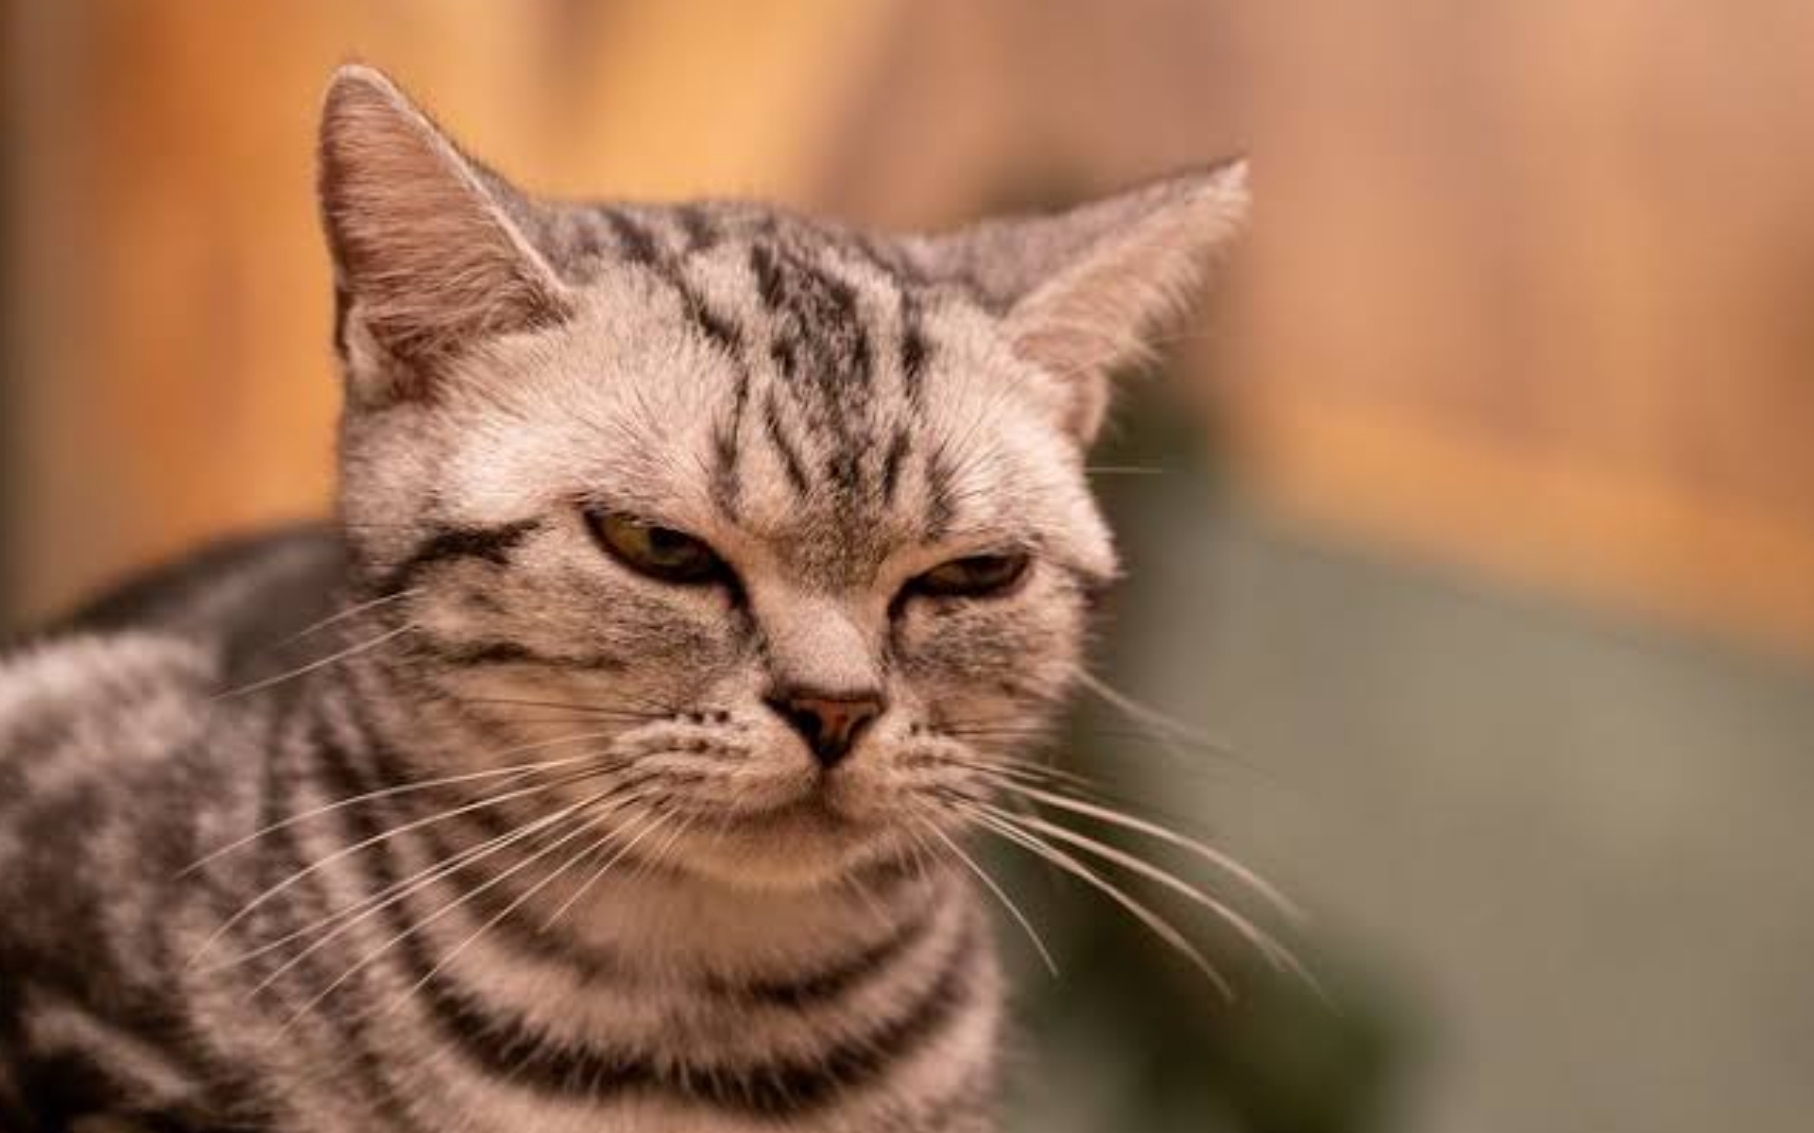 Catlovers Harus Tahu, Ini 13 Hal yang Tidak Disukai Kucing, Jangan Salah Loh